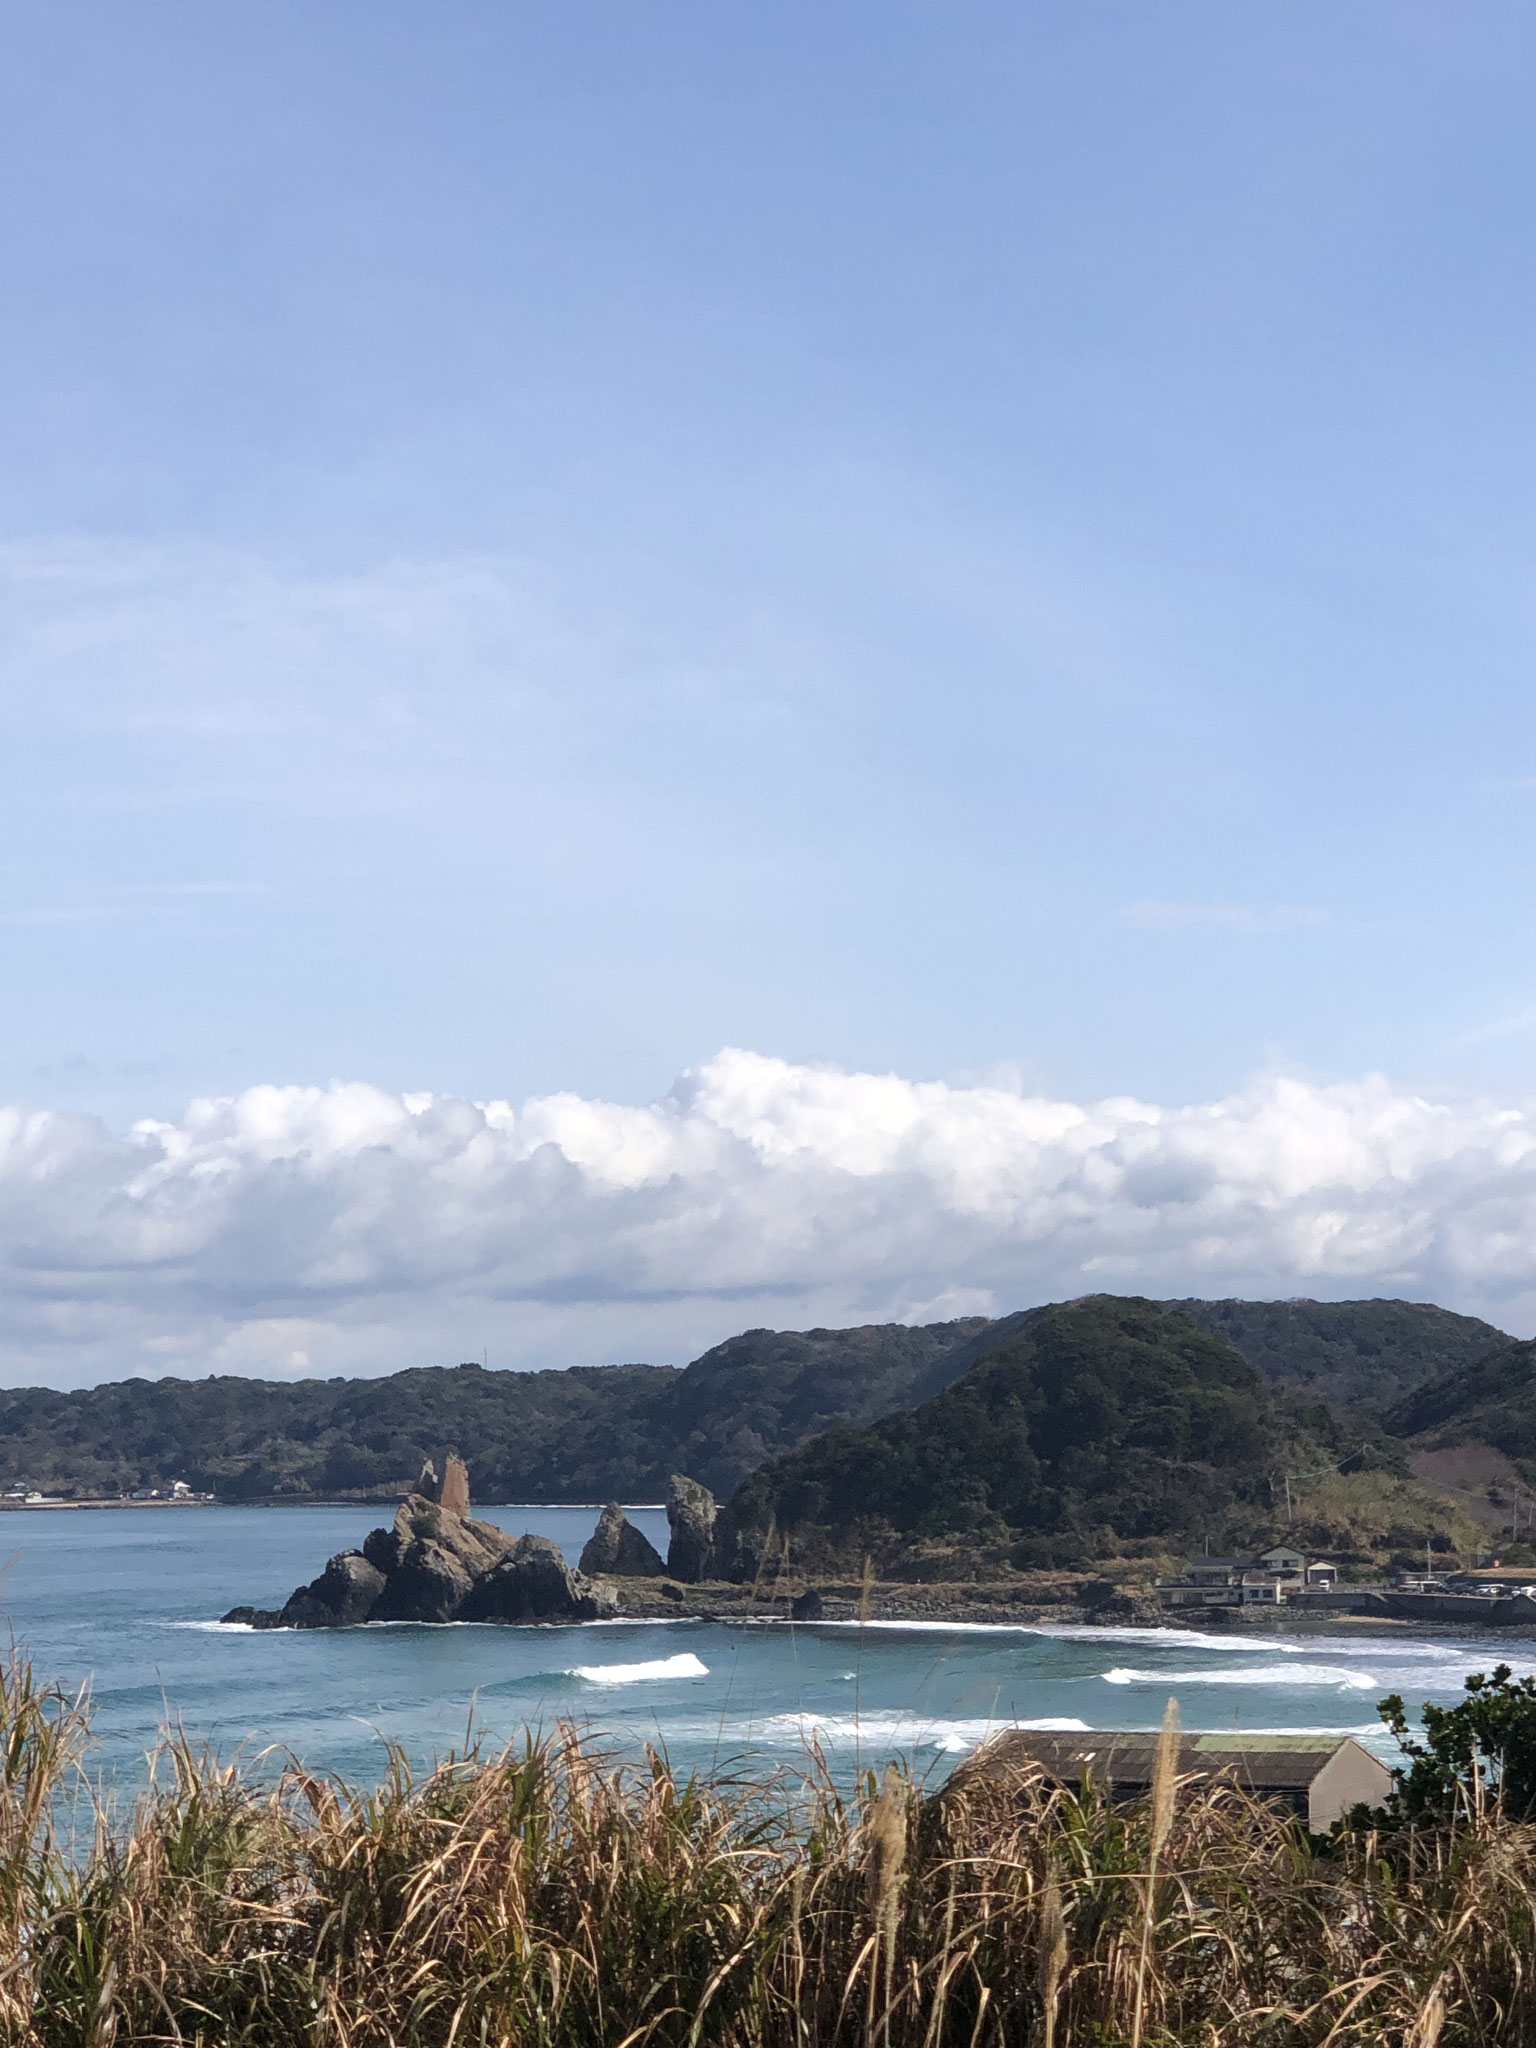 九州サーフィン発祥の地、立神。神々しい岩と美しいブレイクに惹きつけられる。